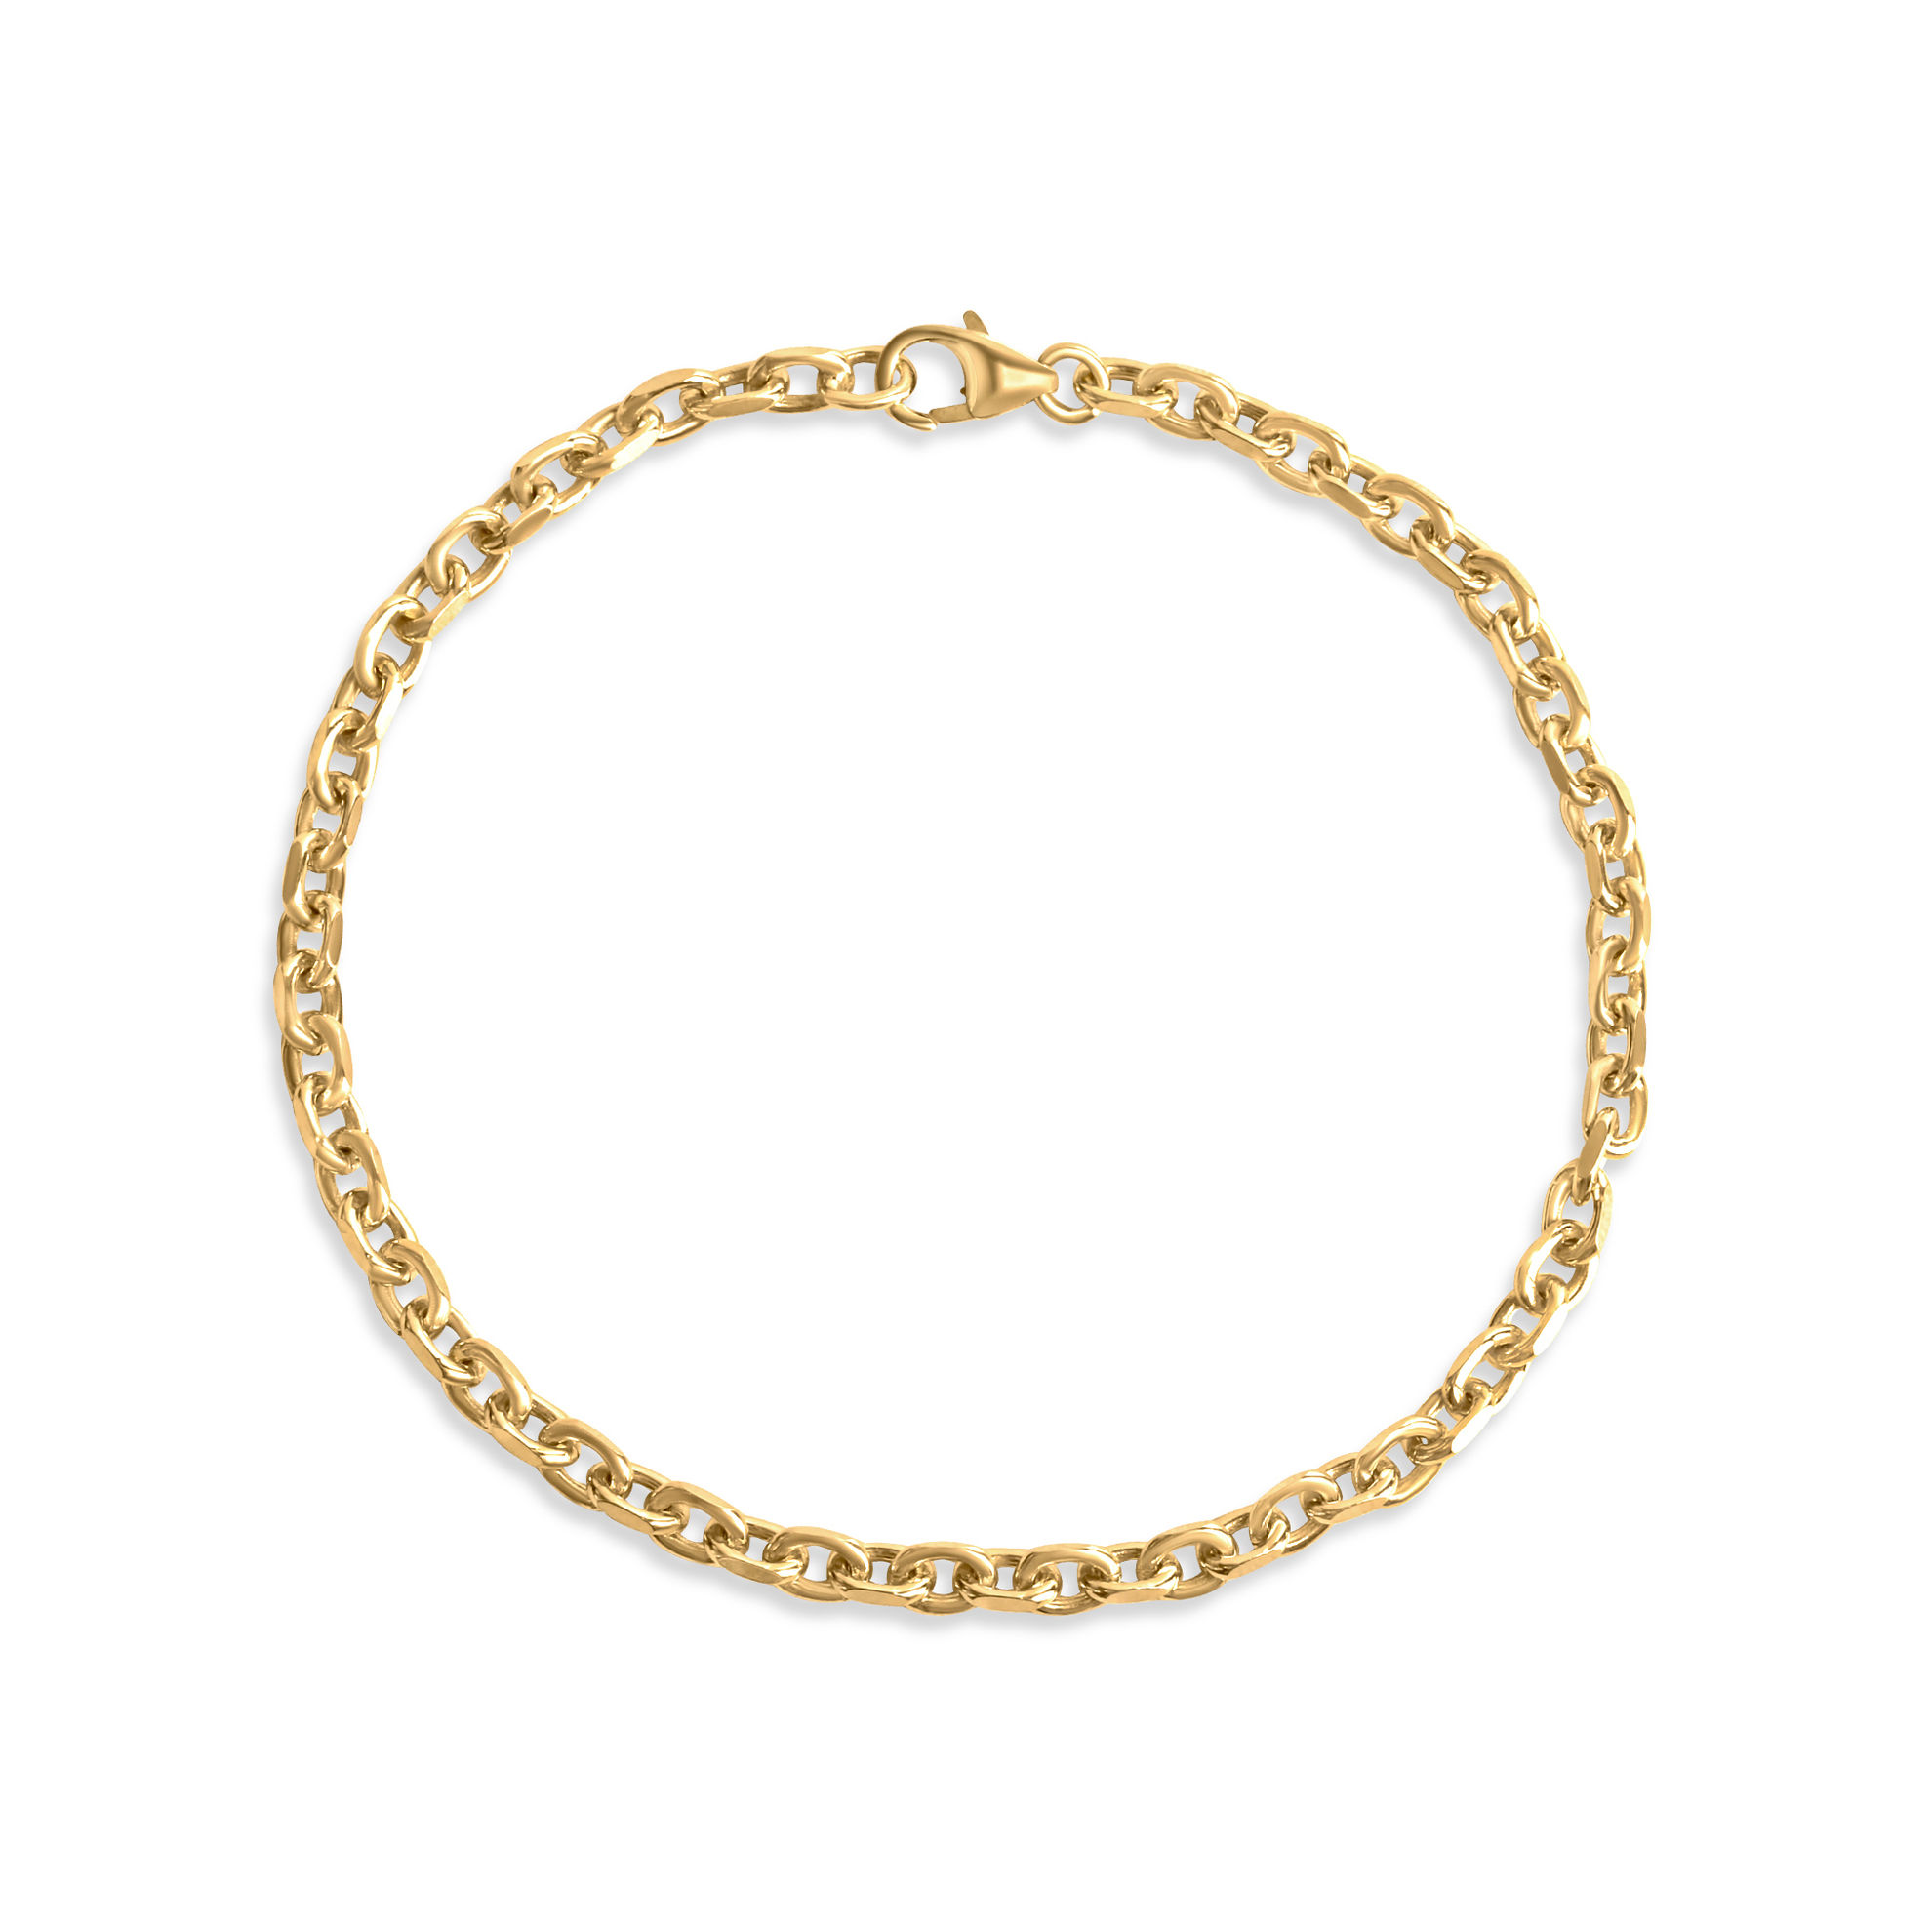 F Armband 333 - Gold Glänzend Größe: 19 bestellen | Weltbild.de